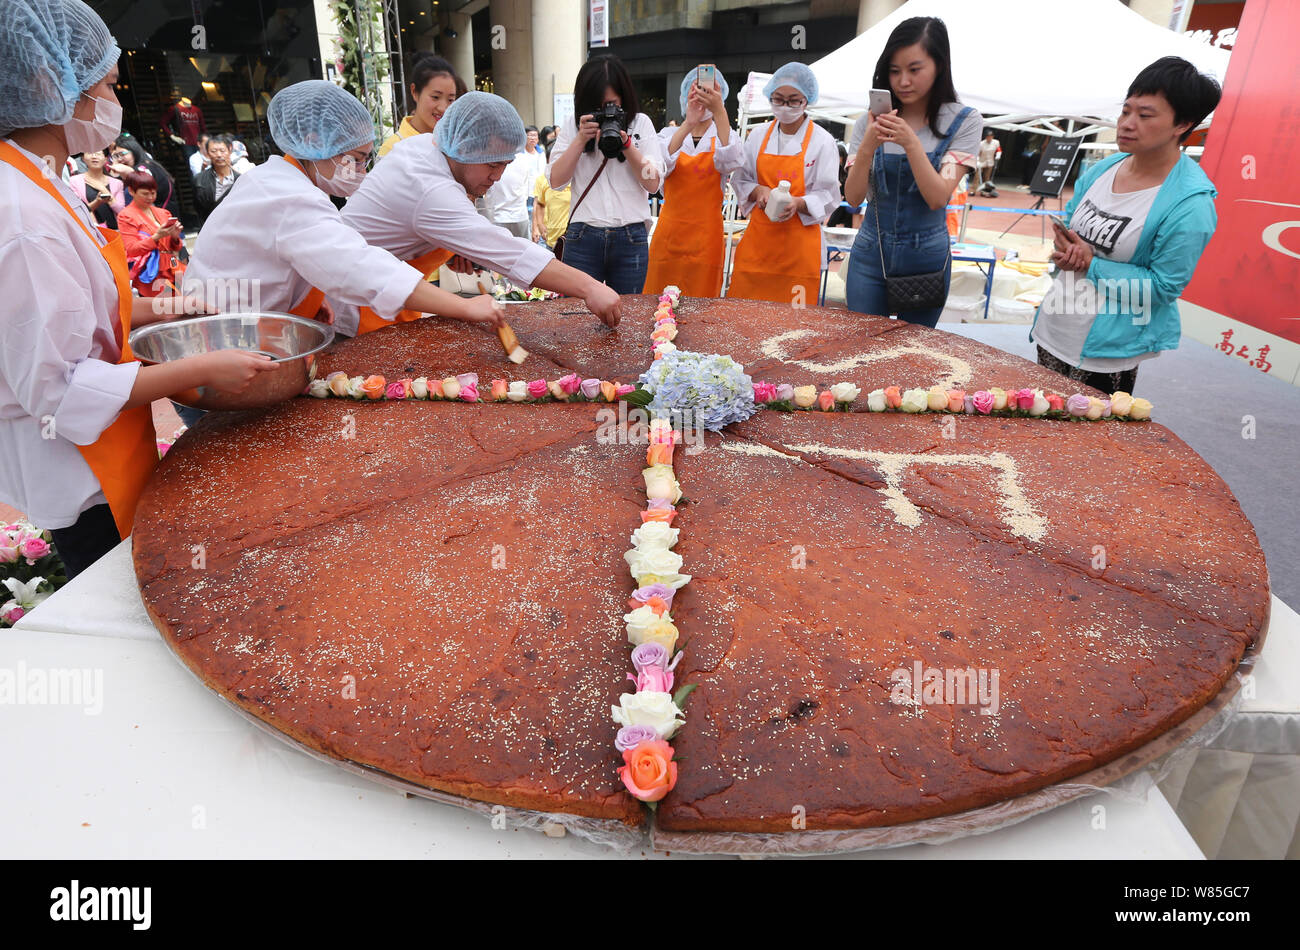 Los empleados de una empresa local de alimentos que los caracteres chinos en el mooncake gigante con un diámetro de 2,4 metros durante un acto promocional de la UPC Foto de stock